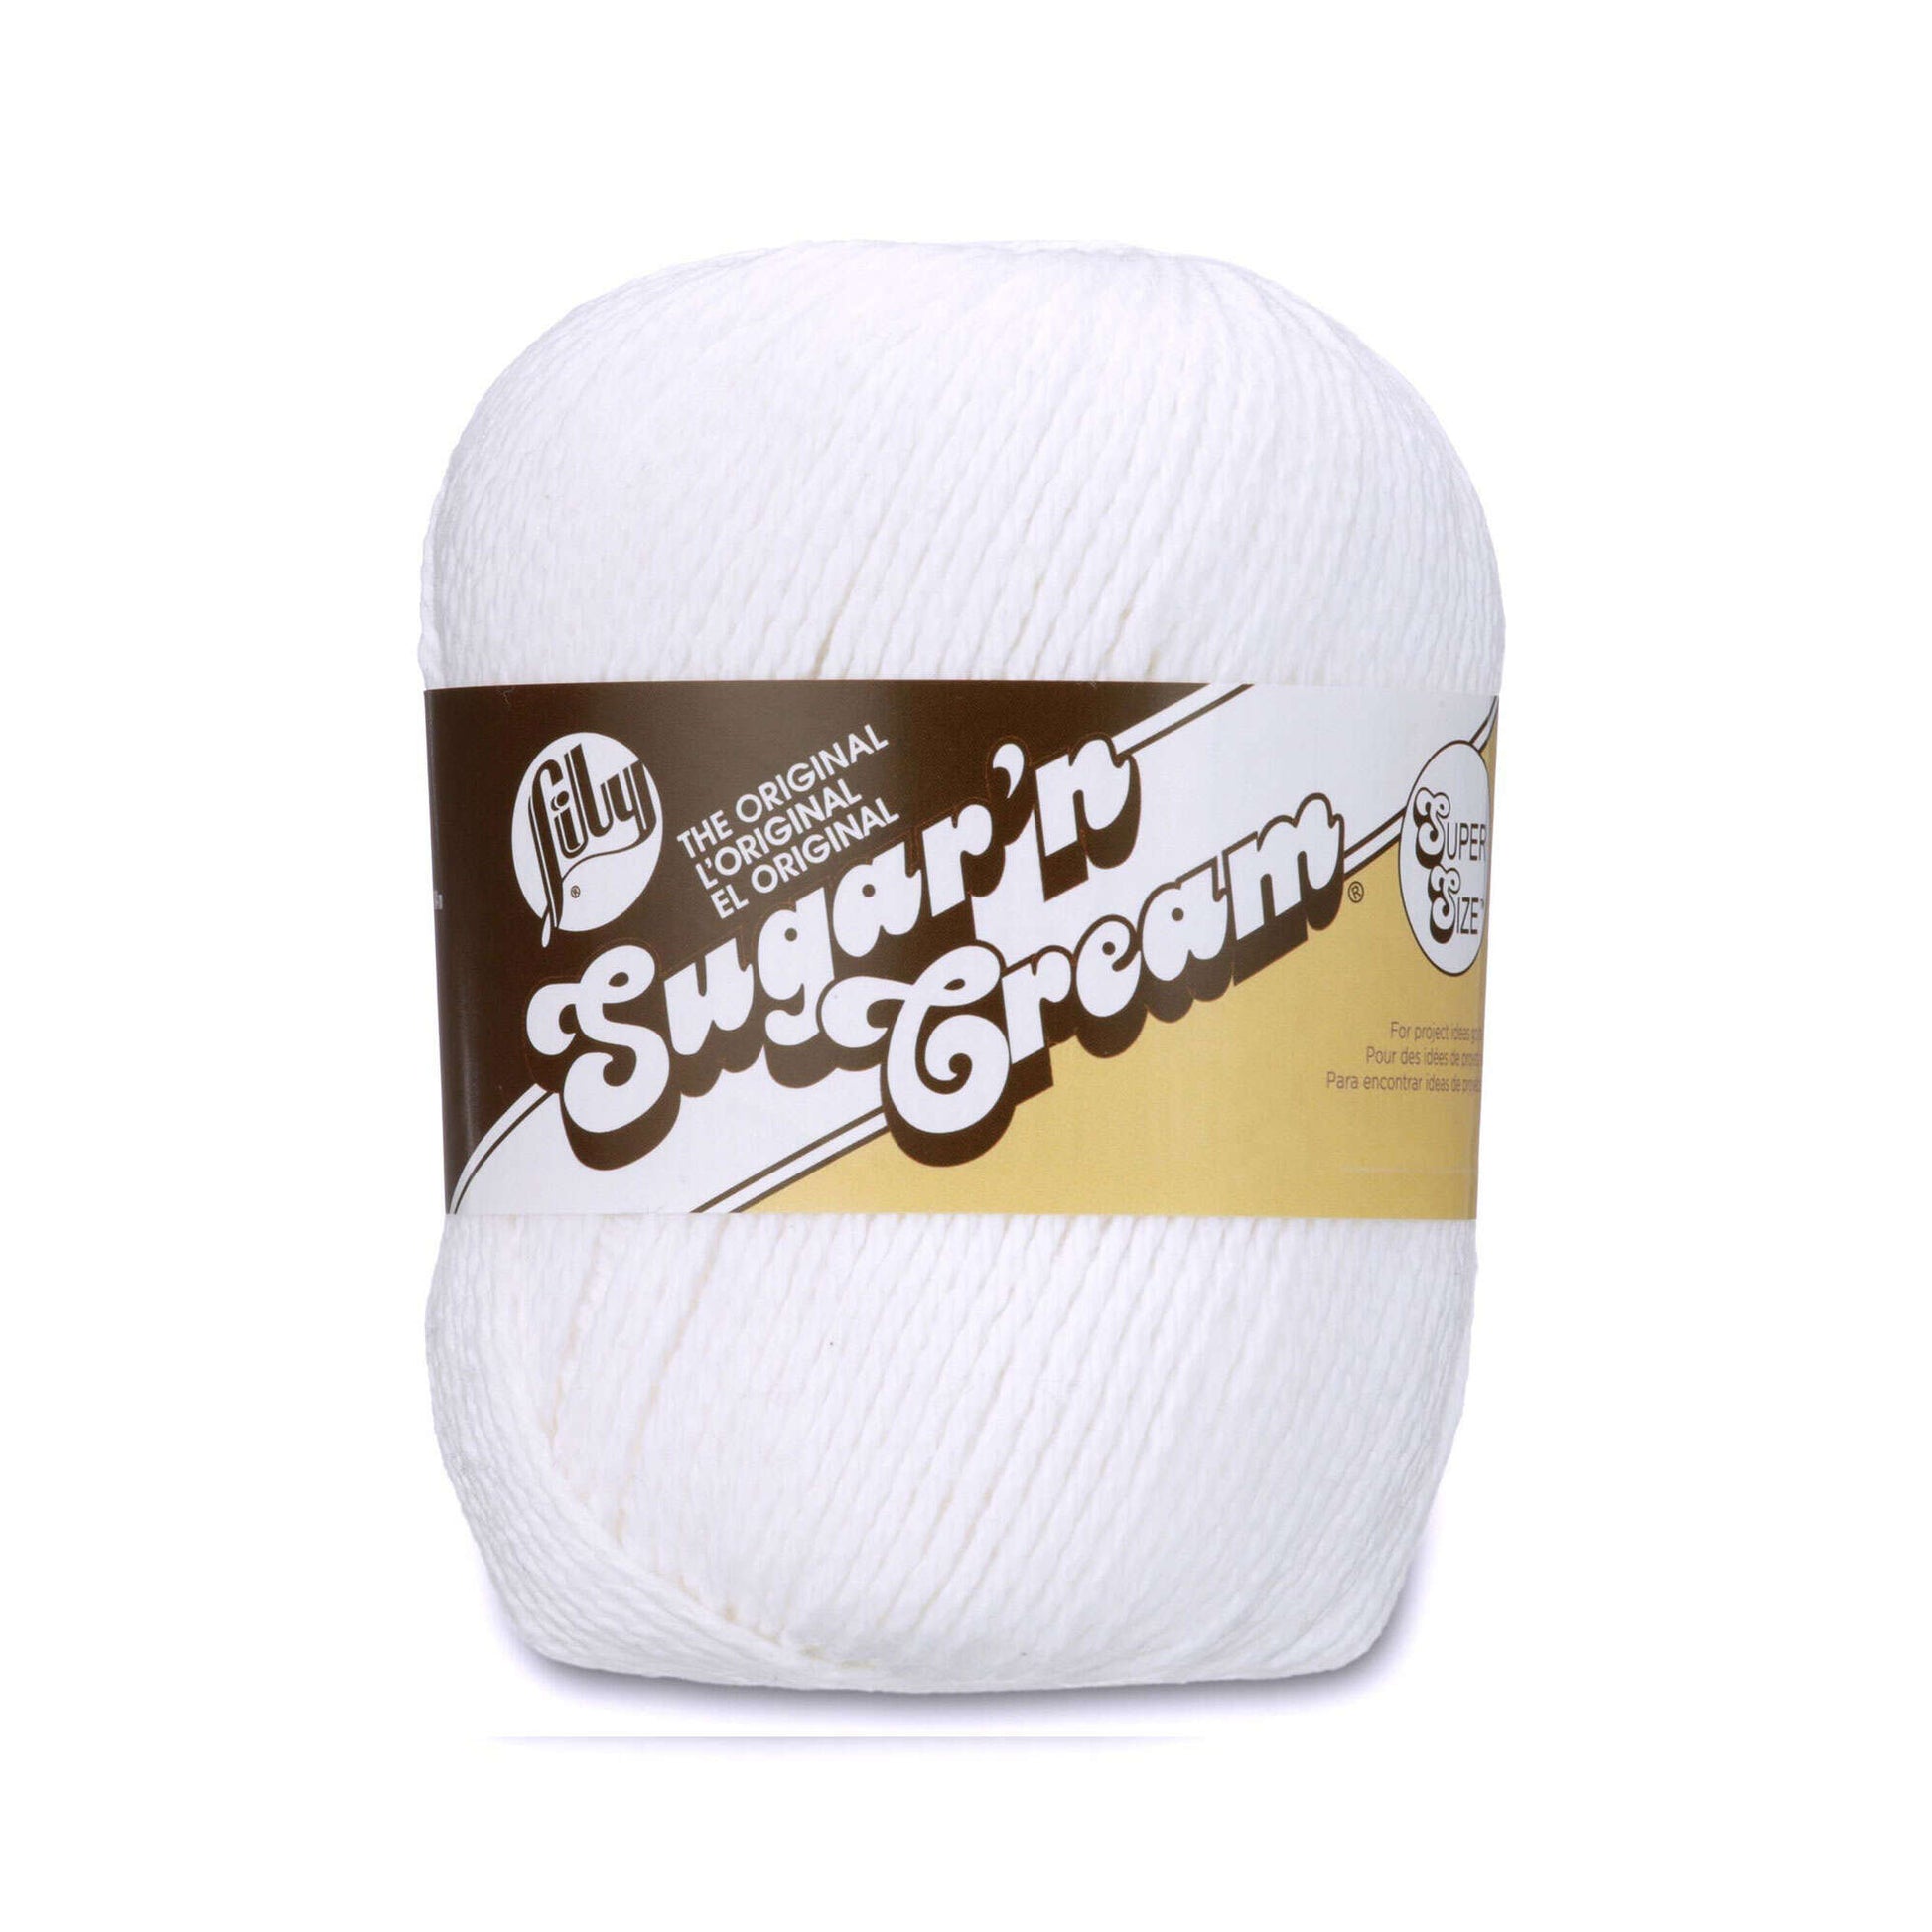 Lily Sugar'n Cream Super Size Yarn White